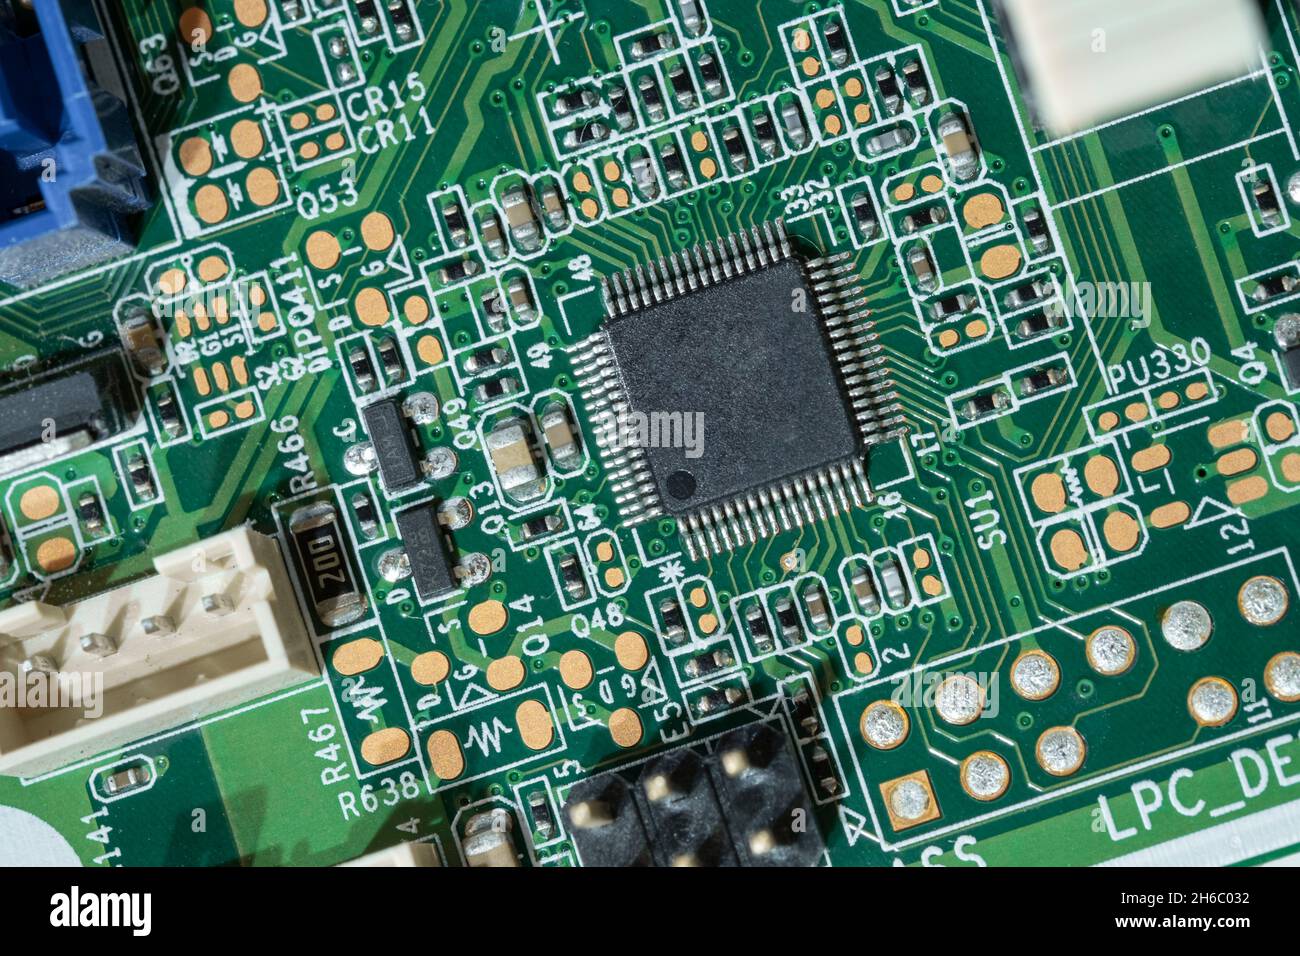 Placa madre de circuito integrado de microchip electrónico, falta de componentes de ordenador Foto de stock